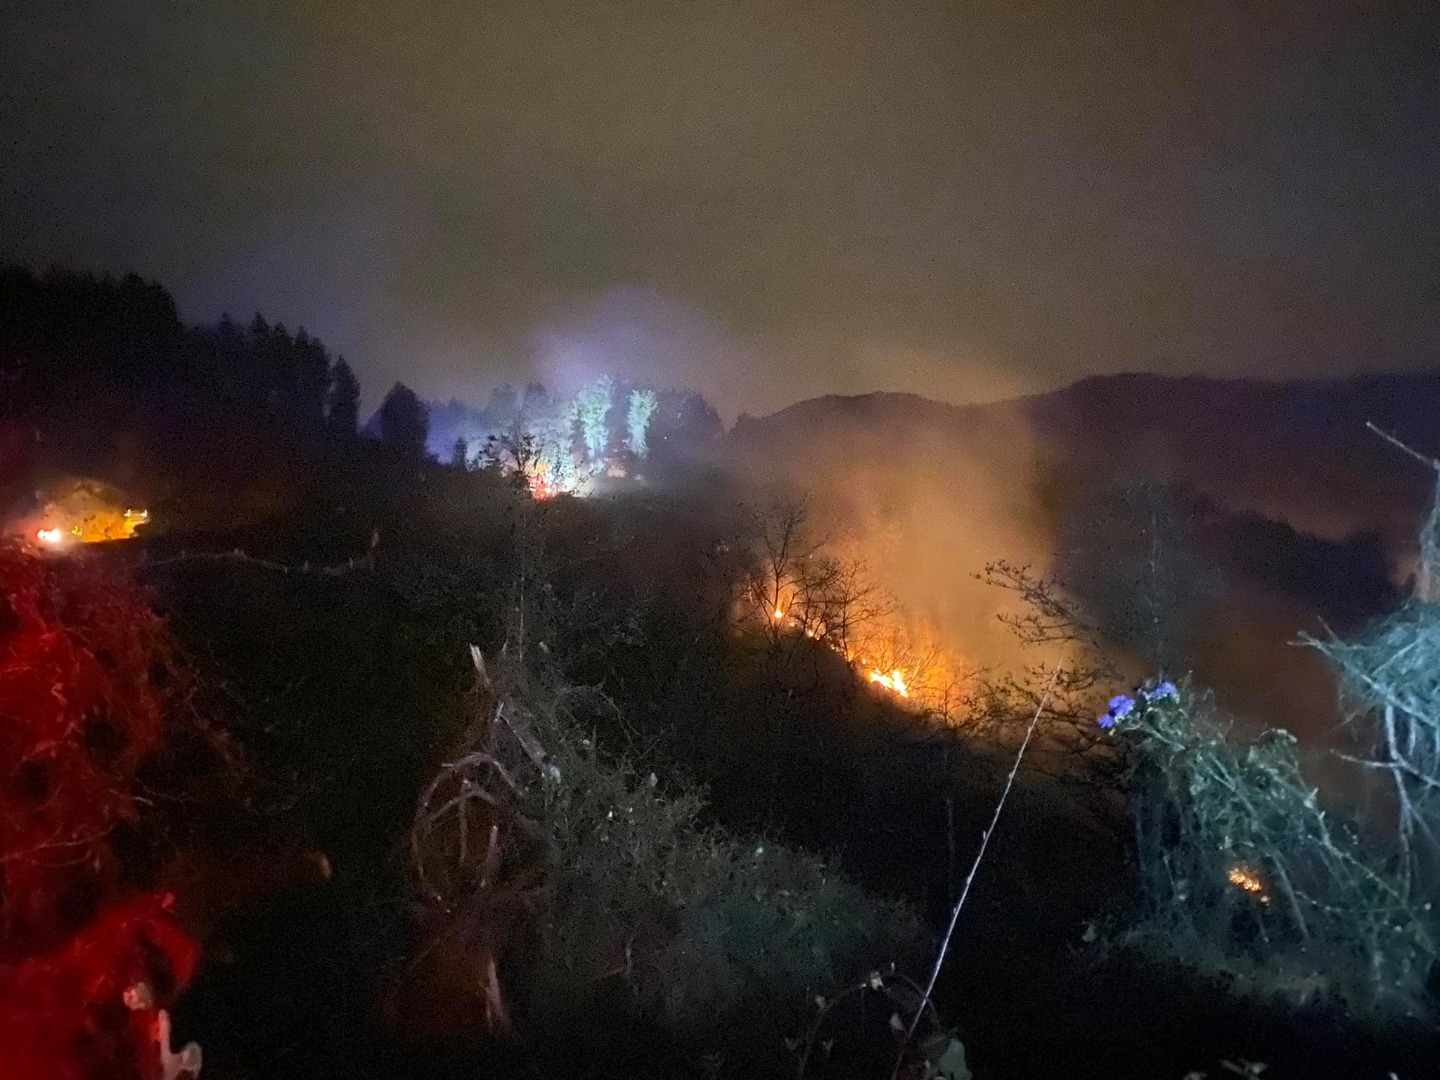 Rize'de orman yangını